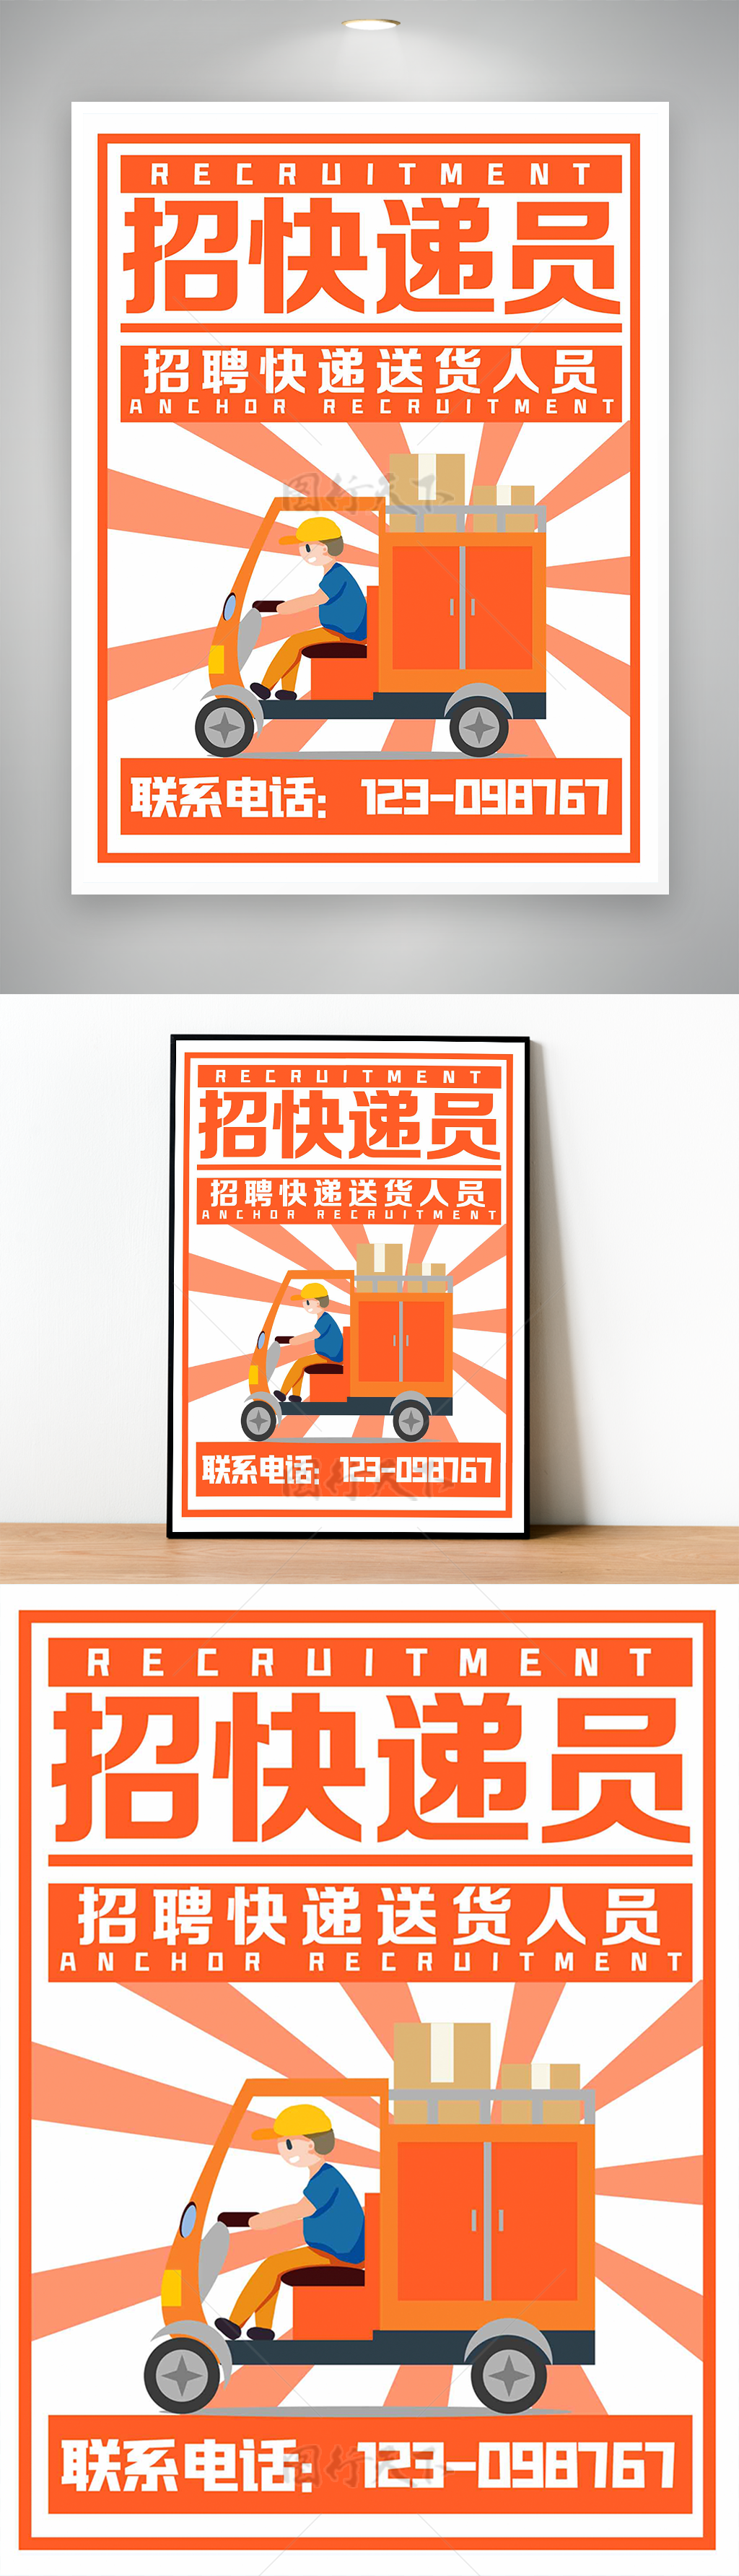 橙色系列诚招快递员送货员招聘海报